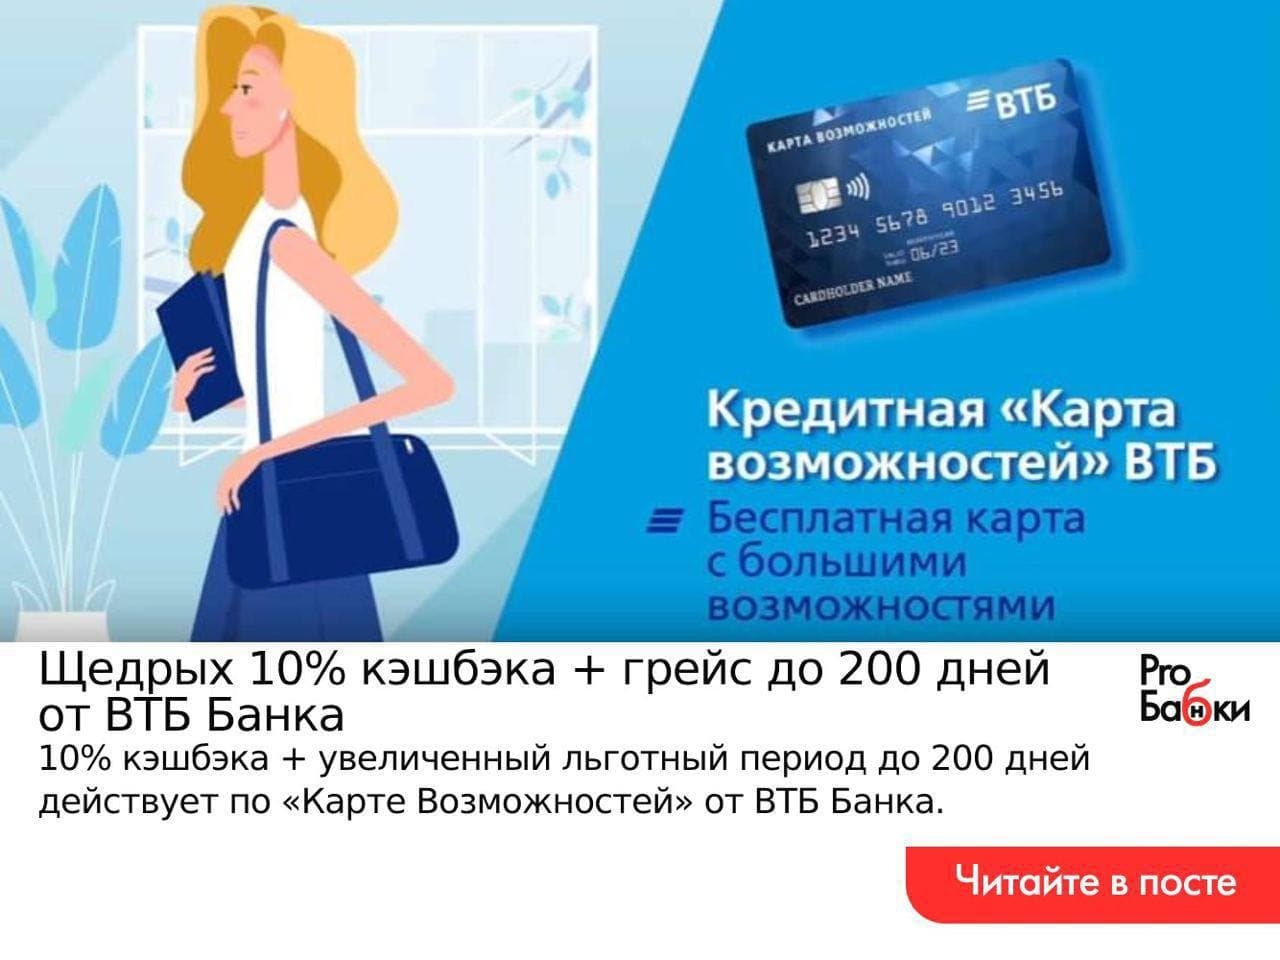 Втб кредитная карта 200 дней условия пользования